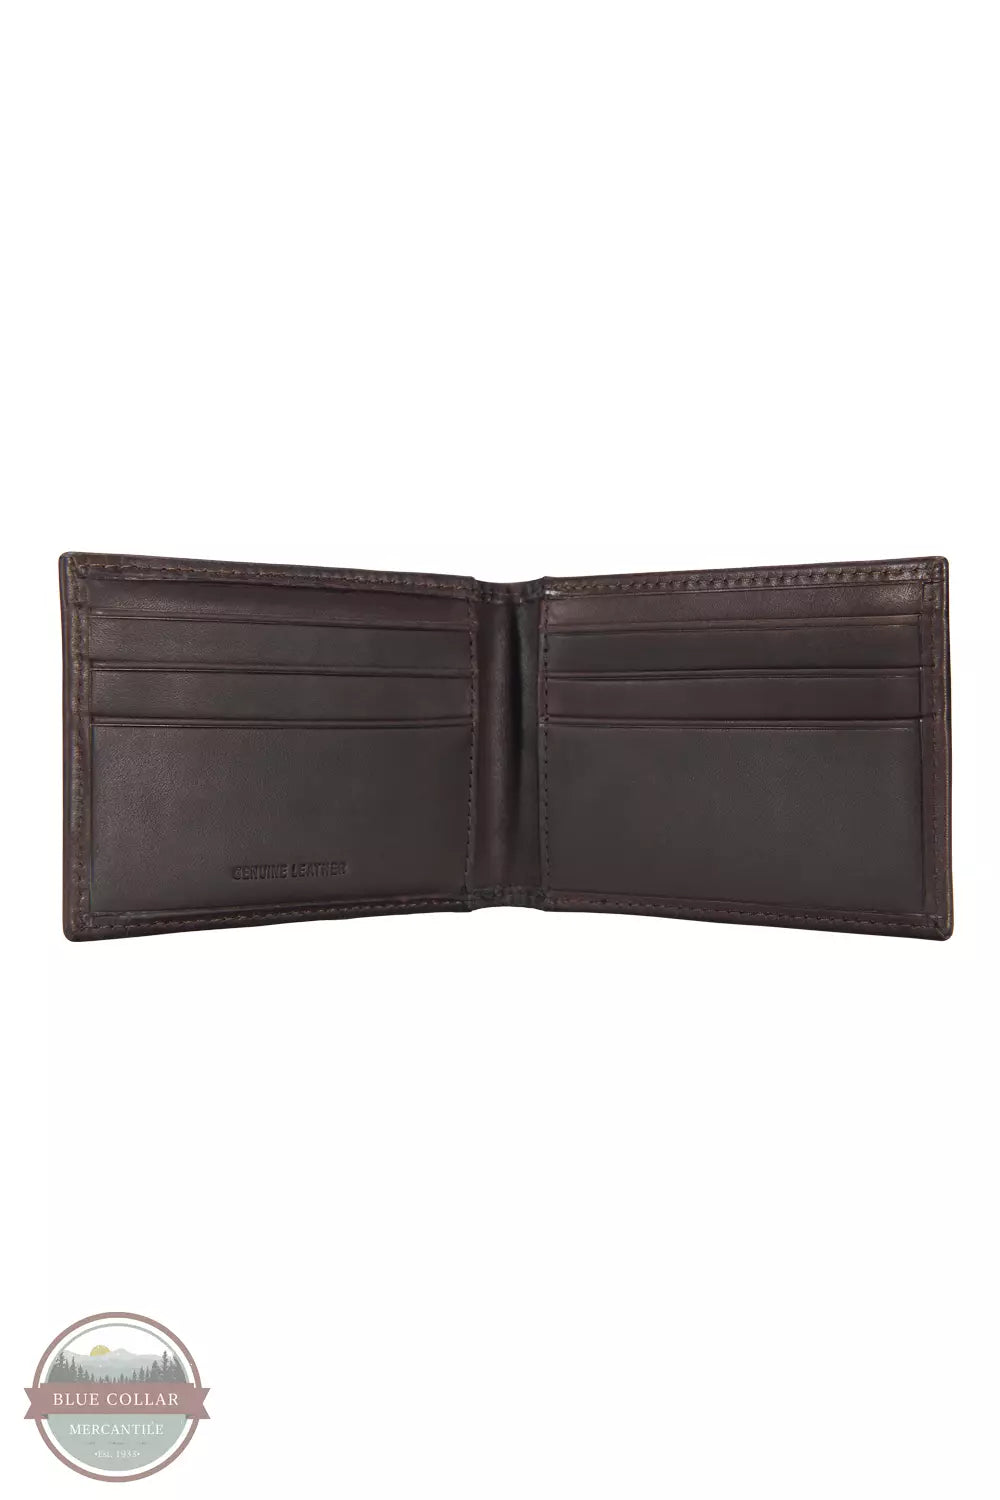 Carhartt B0000221 Oil Tan Leather Front Pocket Bi-Fold Wallet Money Clip Inside View